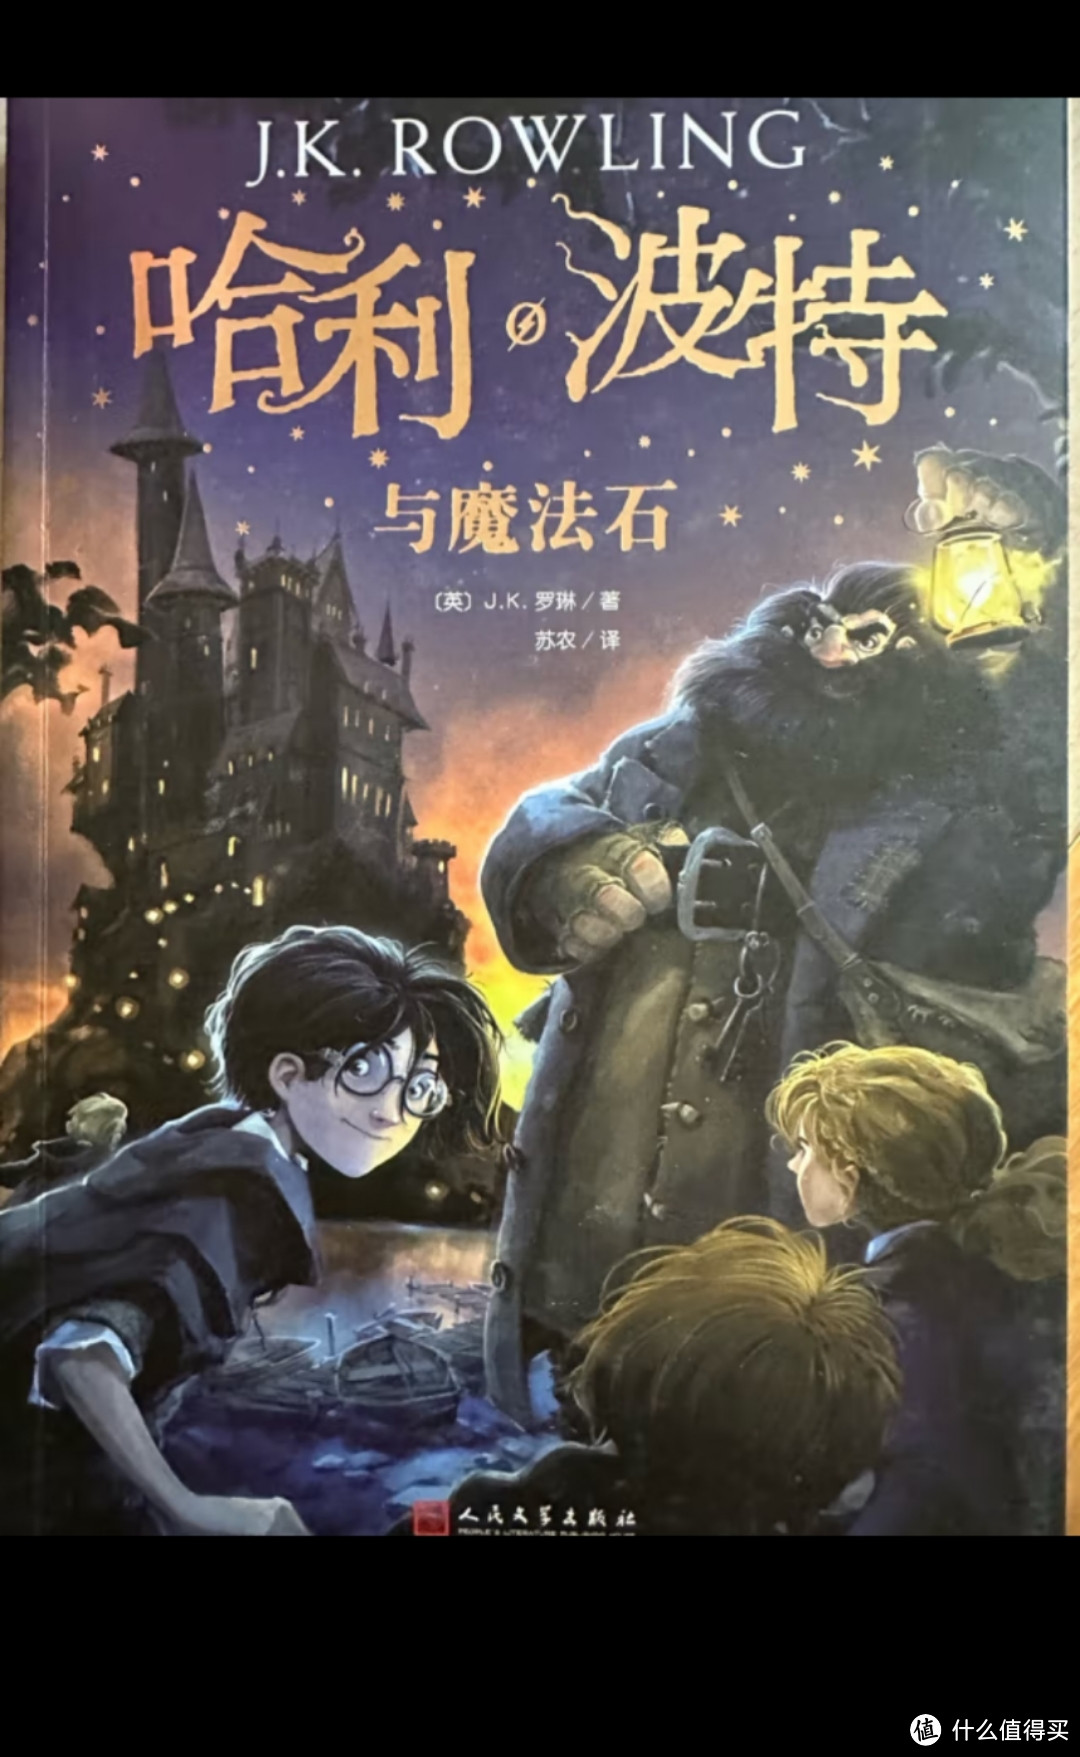 《哈利·波特》系列是一部非常受欢迎的魔幻小说，适合年龄在7至10岁之间的孩子进行阅读。